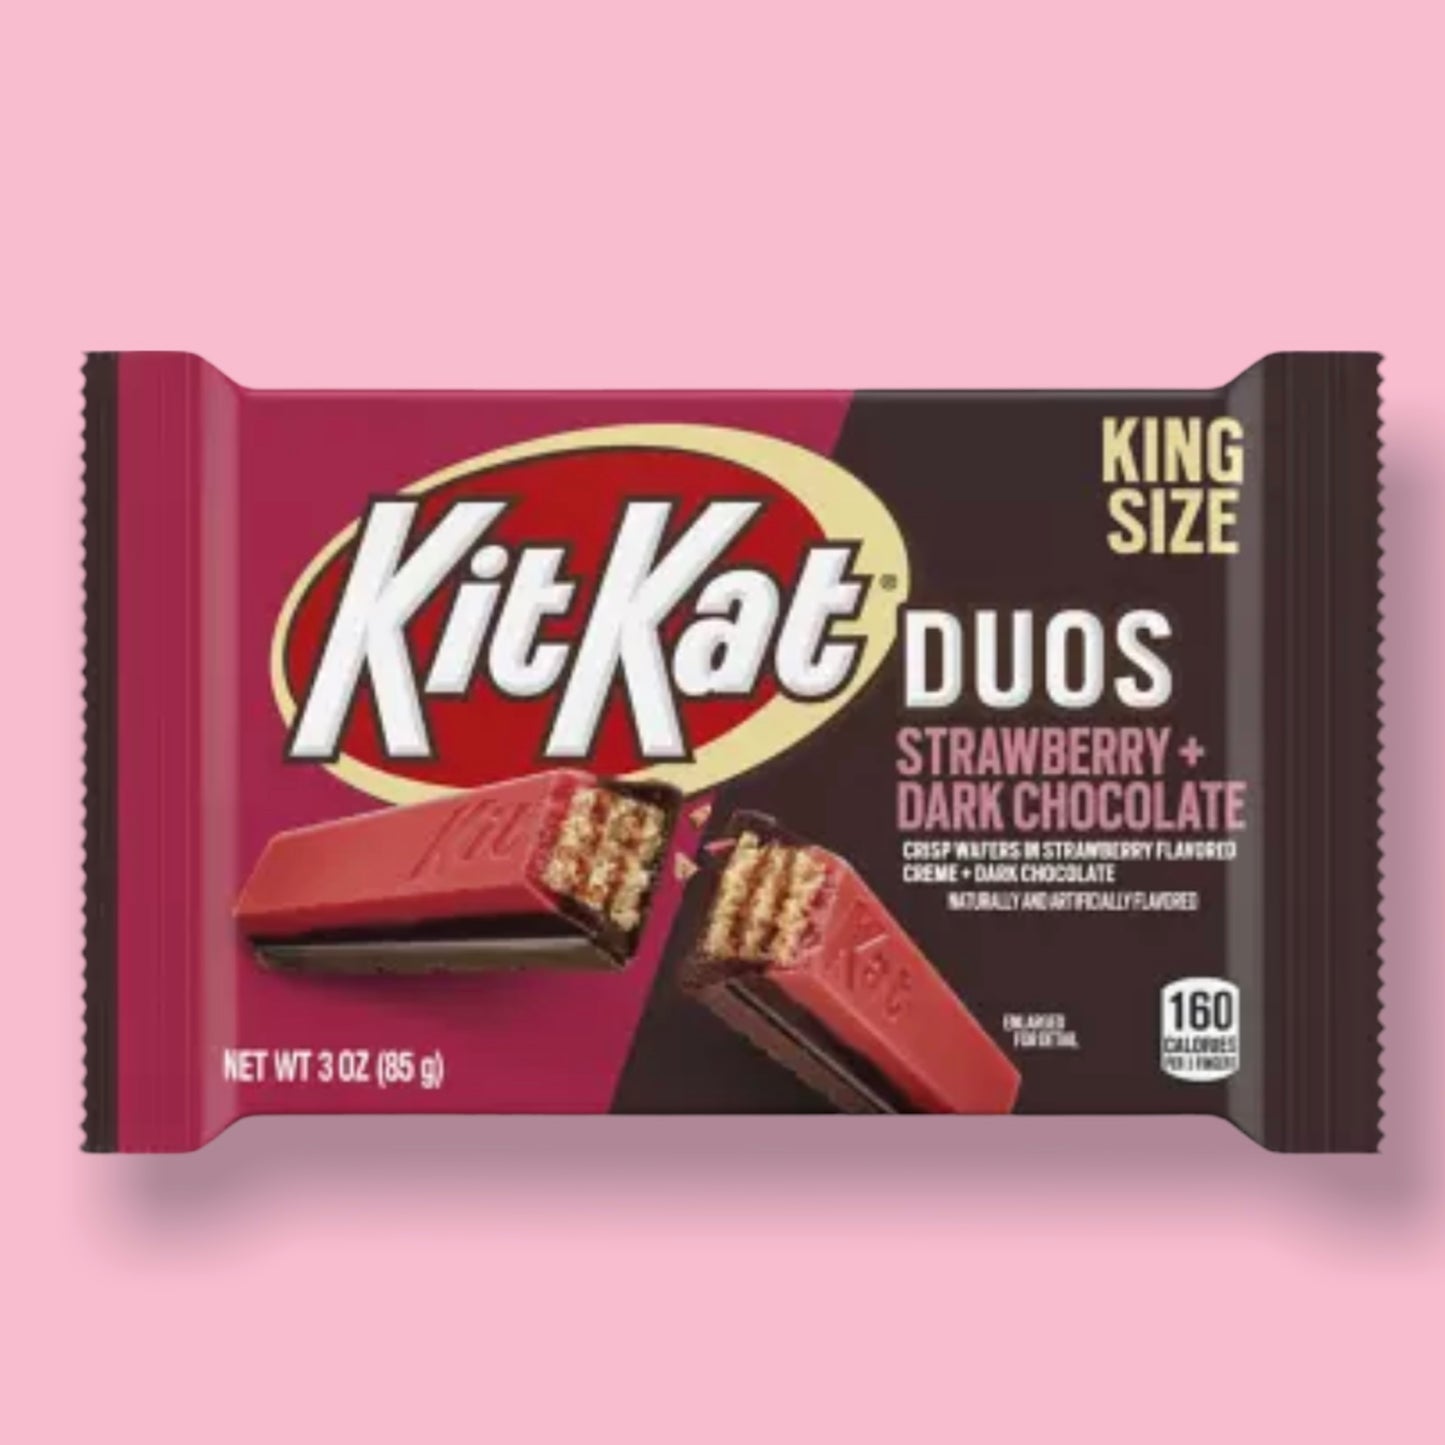 KitKat Duos - Strawberry & Dark Chocolate